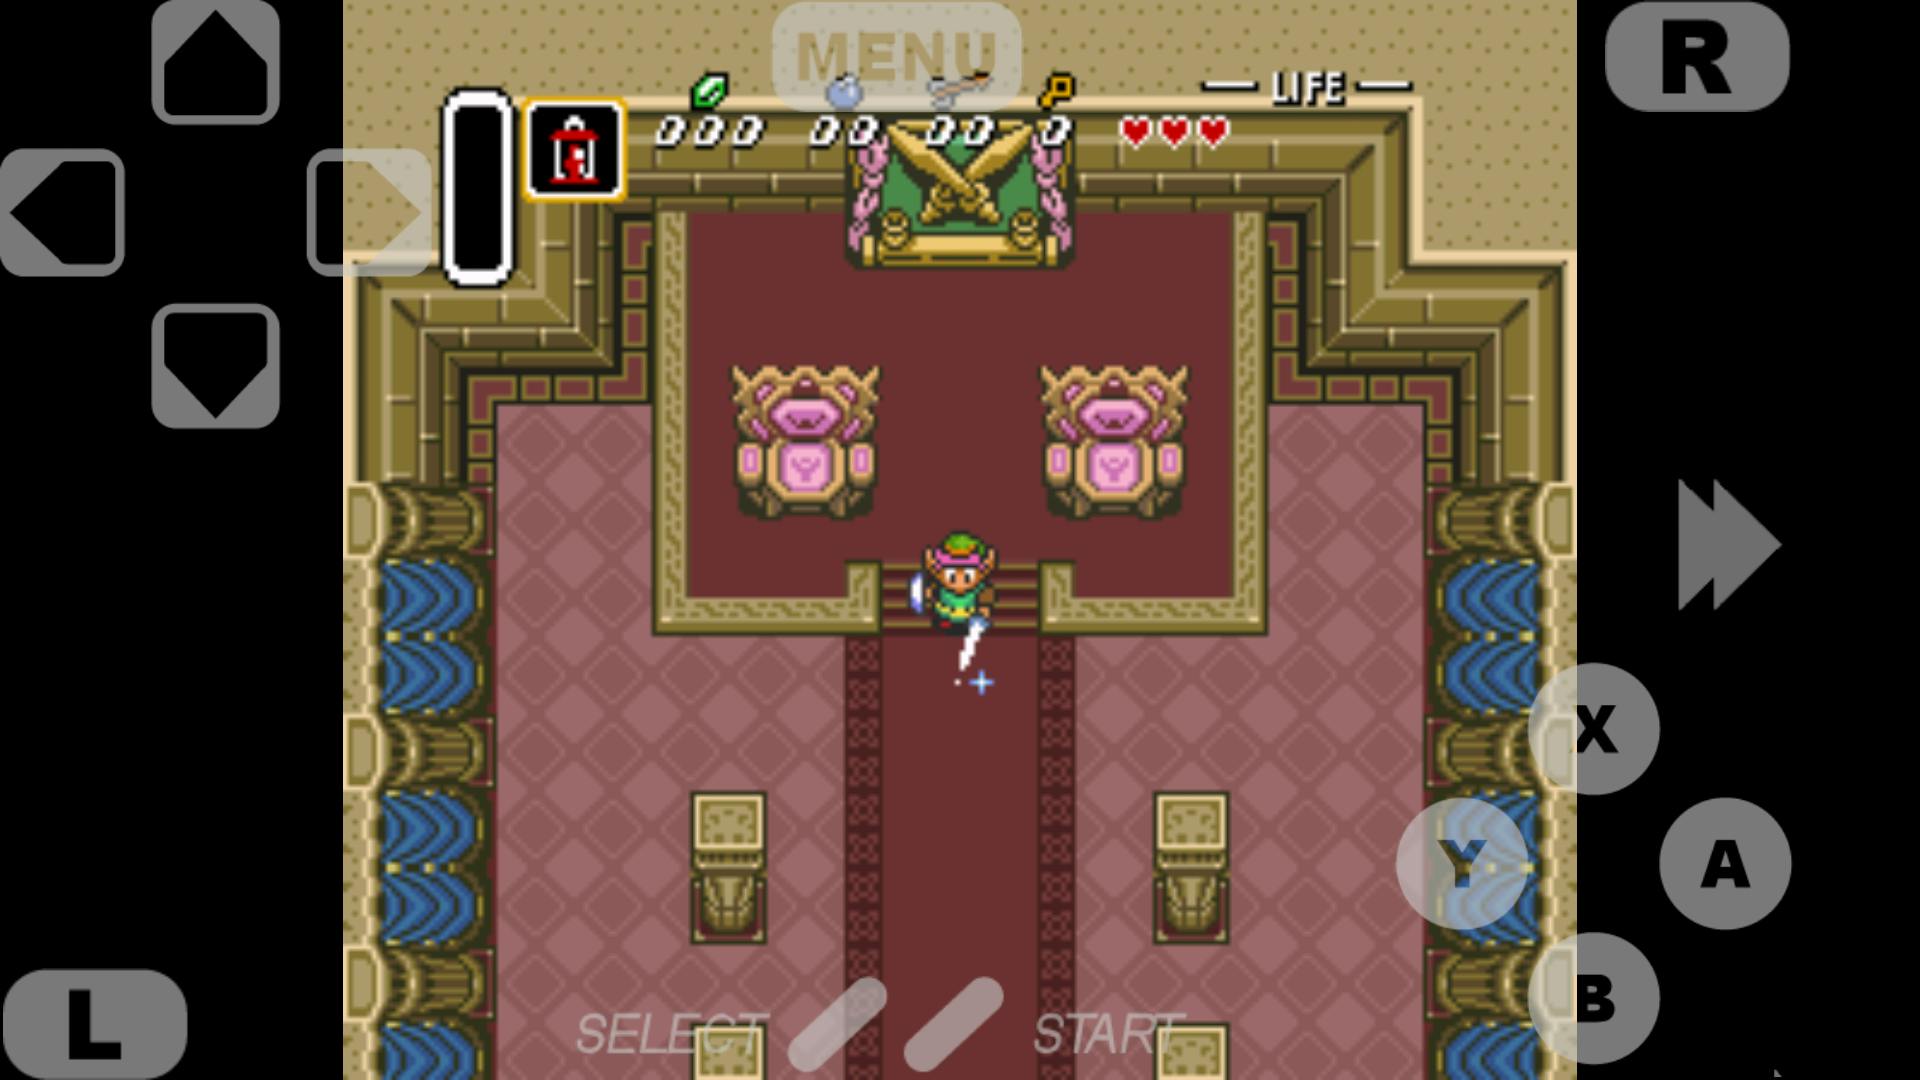 "The Legend of Zelda: ALttP" emulated on SuperLegacy16